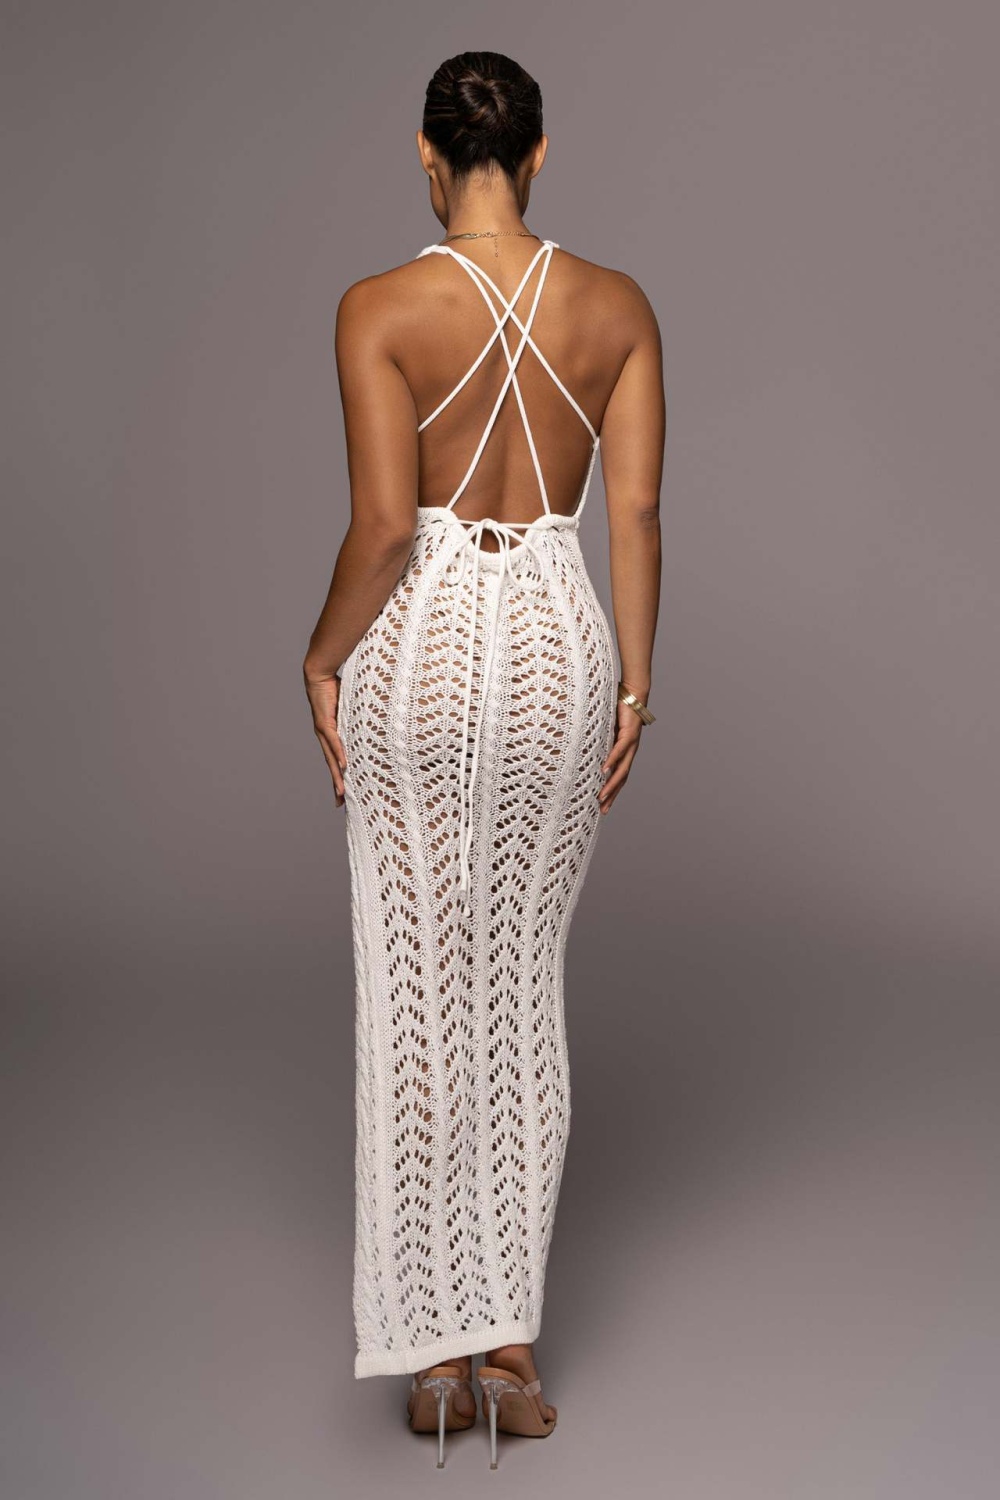 Sexy sling dress high split hollow long dress for women